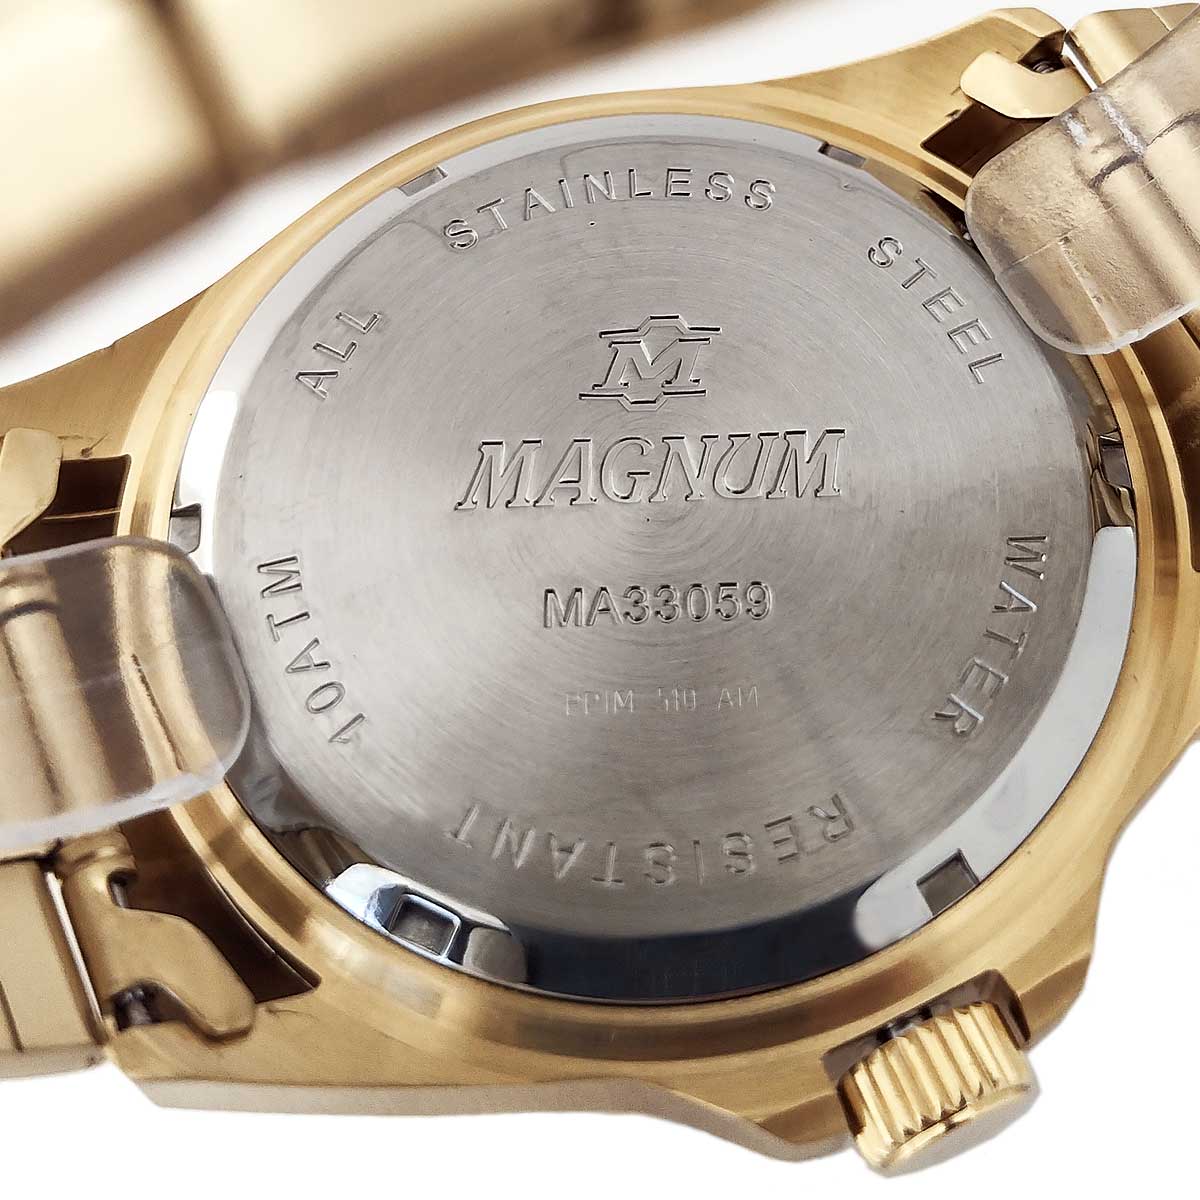 Relógio Masculino Dourado com Preto Magnum - MSTIME RELÓGIOS